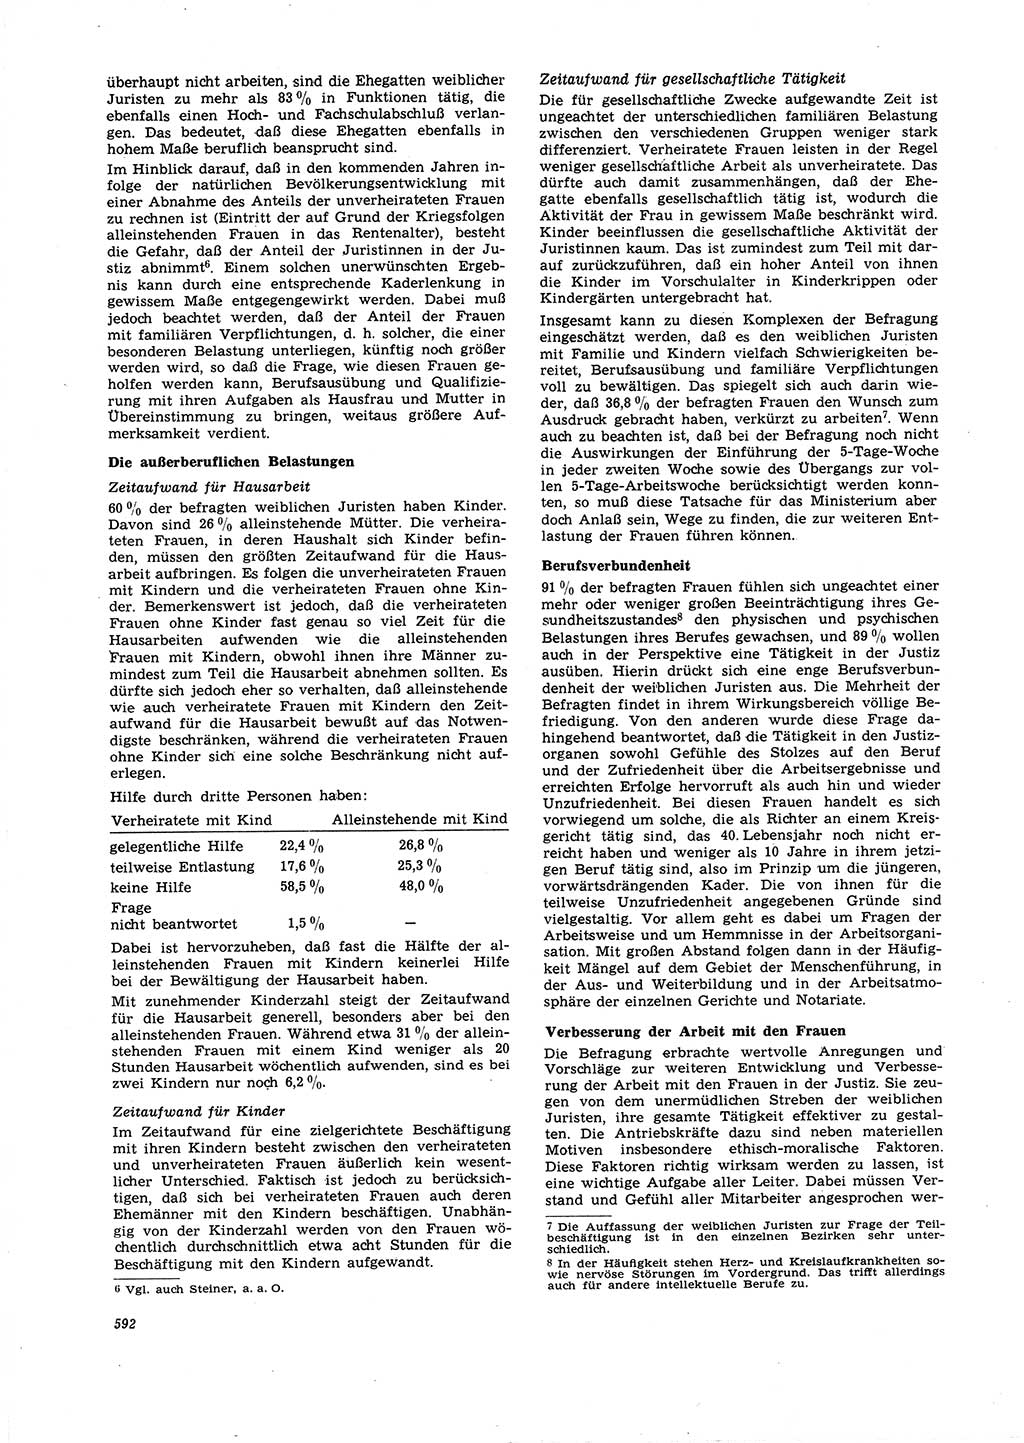 Neue Justiz (NJ), Zeitschrift für Recht und Rechtswissenschaft [Deutsche Demokratische Republik (DDR)], 21. Jahrgang 1967, Seite 592 (NJ DDR 1967, S. 592)